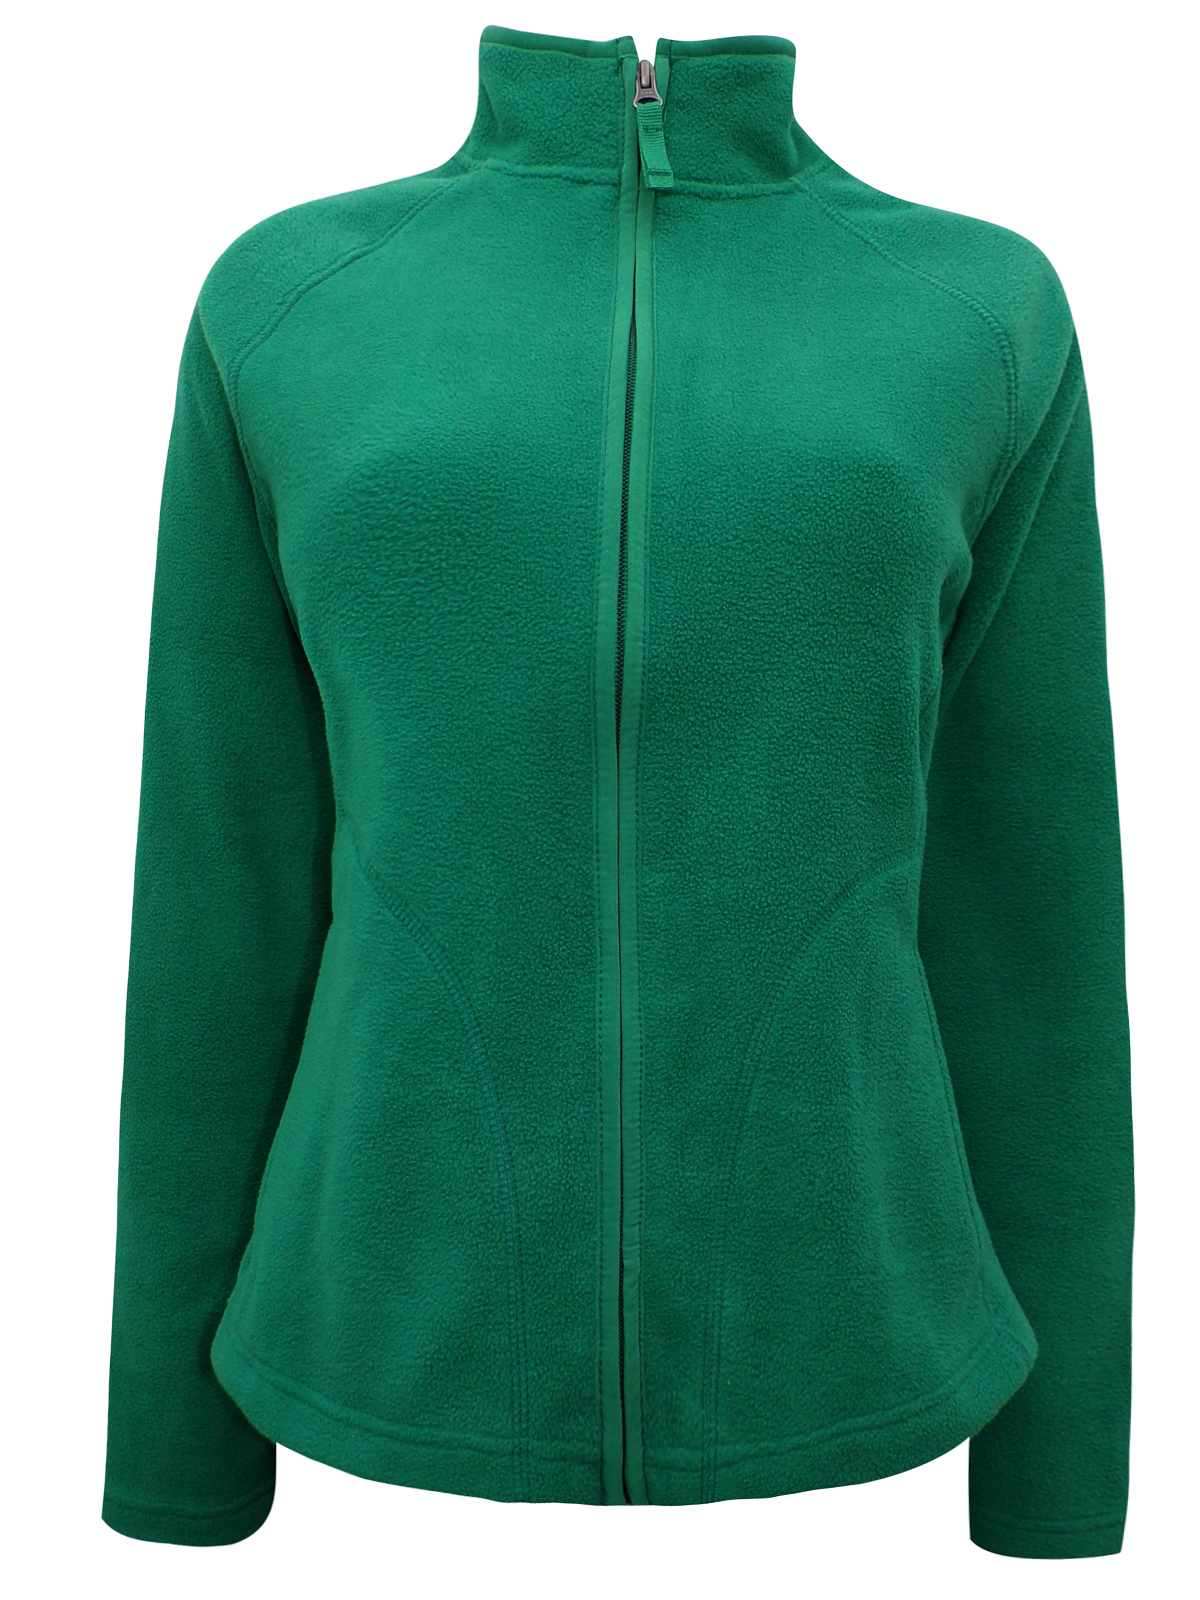 merona green jacket